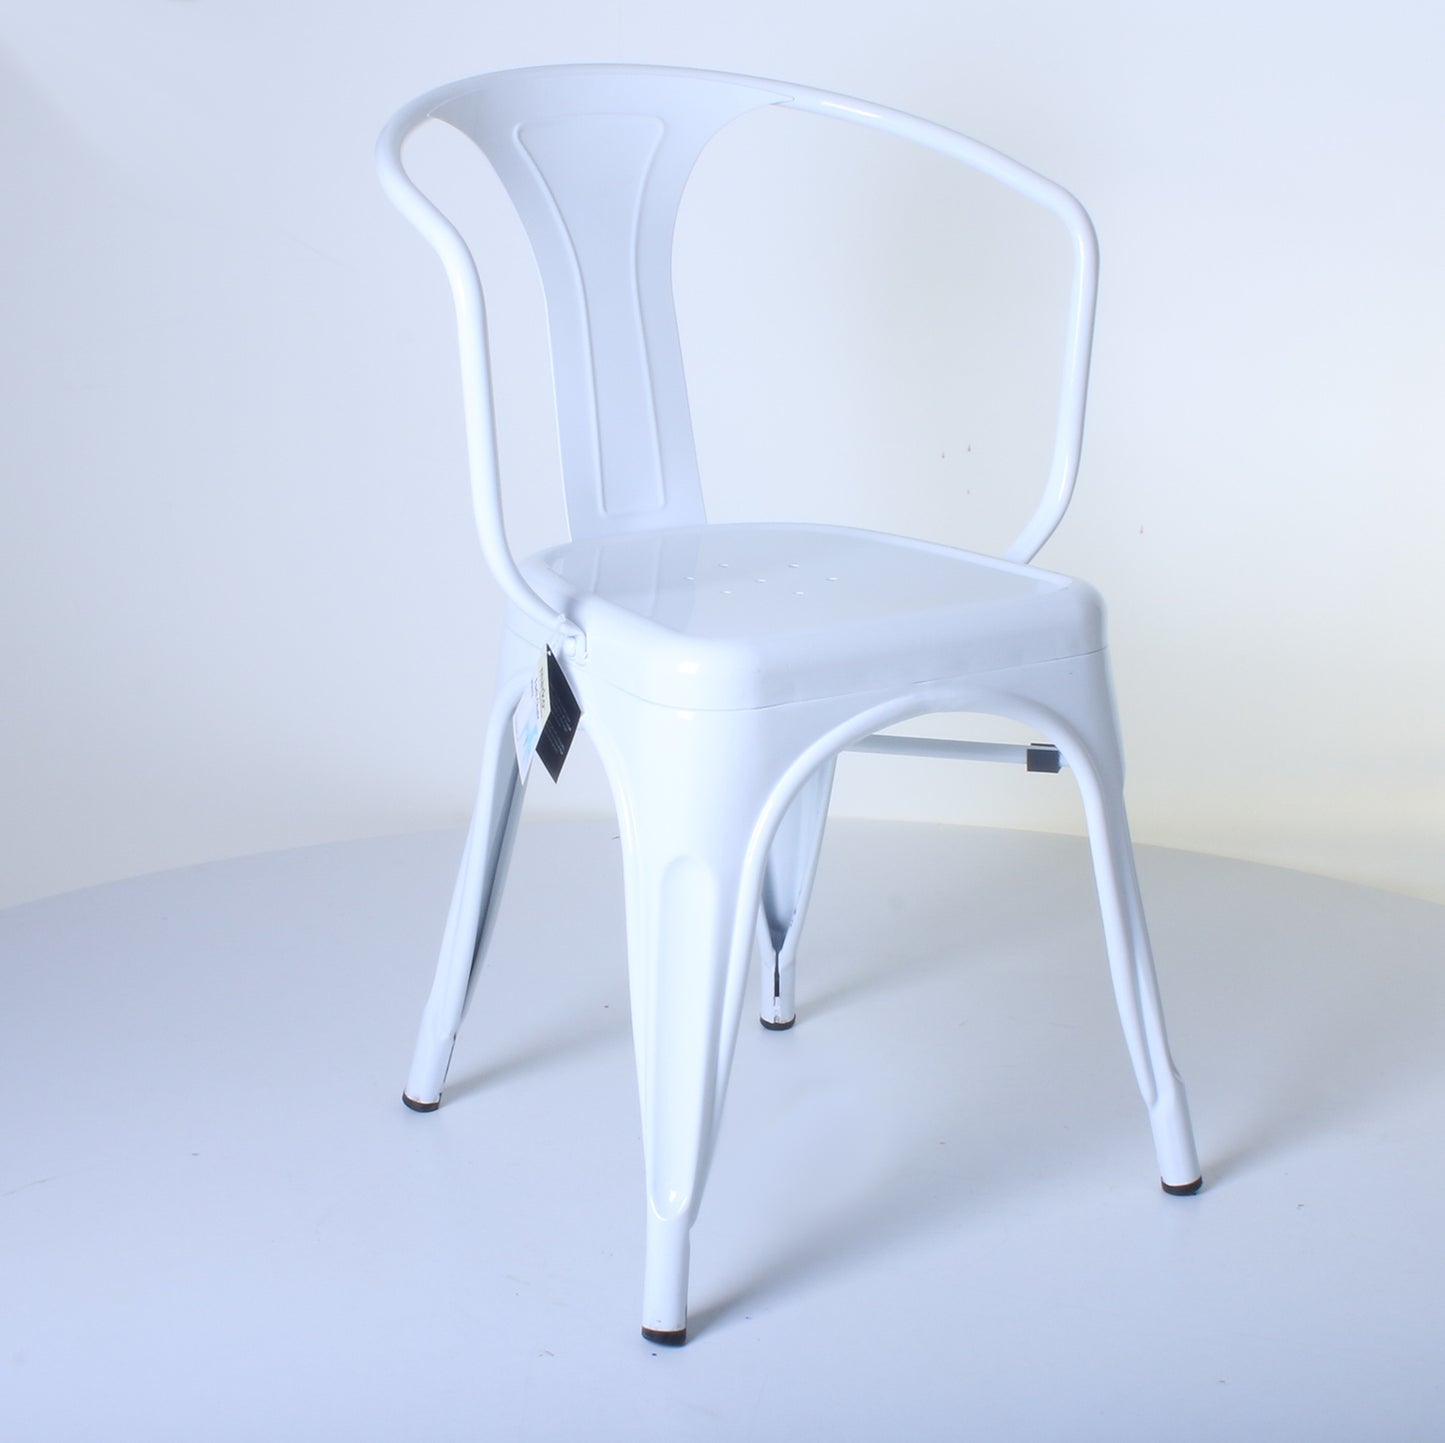 3PC Enna Table & Forli Chair Set - White